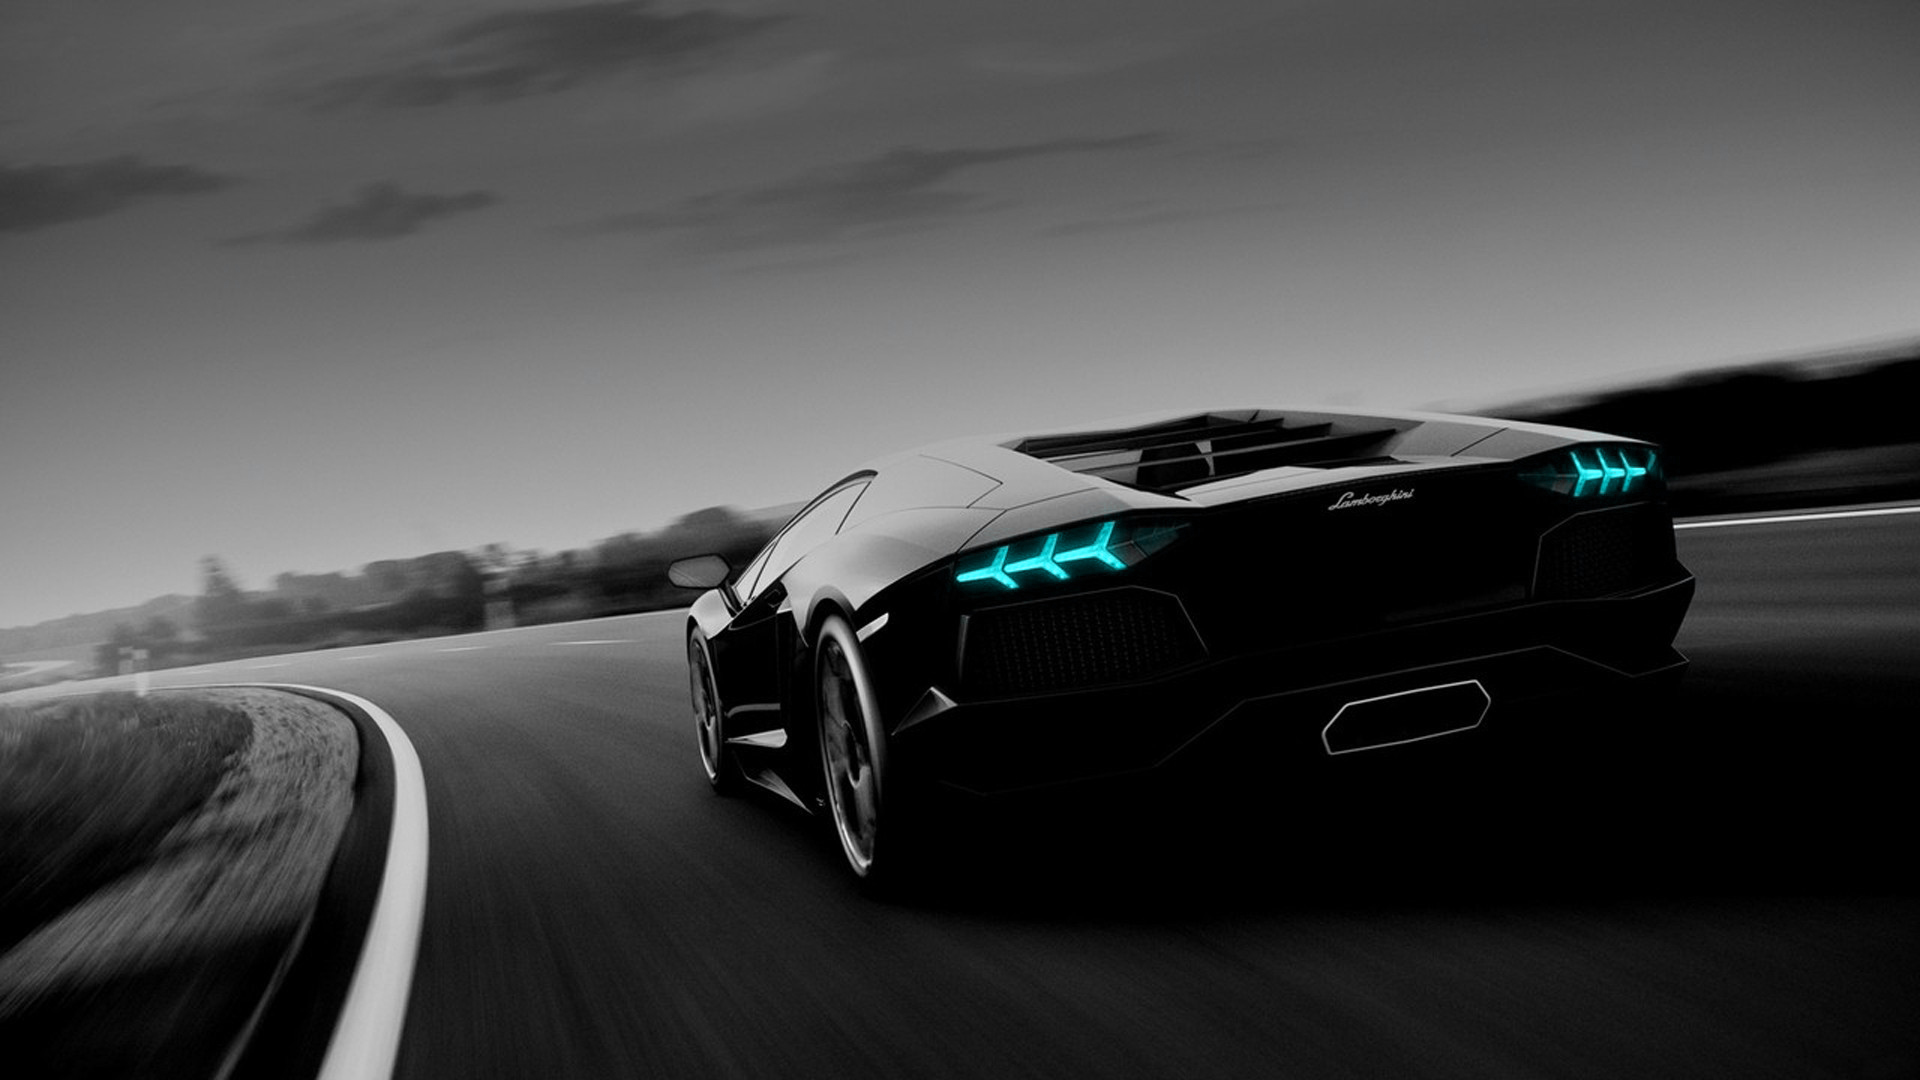 Siêu xe Lamborghini Aventador: Bạn là fan của siêu xe Lamborghini Aventador? Bạn muốn thưởng thức những hình ảnh đầy mê hoặc về chiếc siêu xe đỉnh cao này? Hãy truy cập ngay để chiêm ngưỡng đẳng cấp và sự hoàn hảo của siêu xe này.